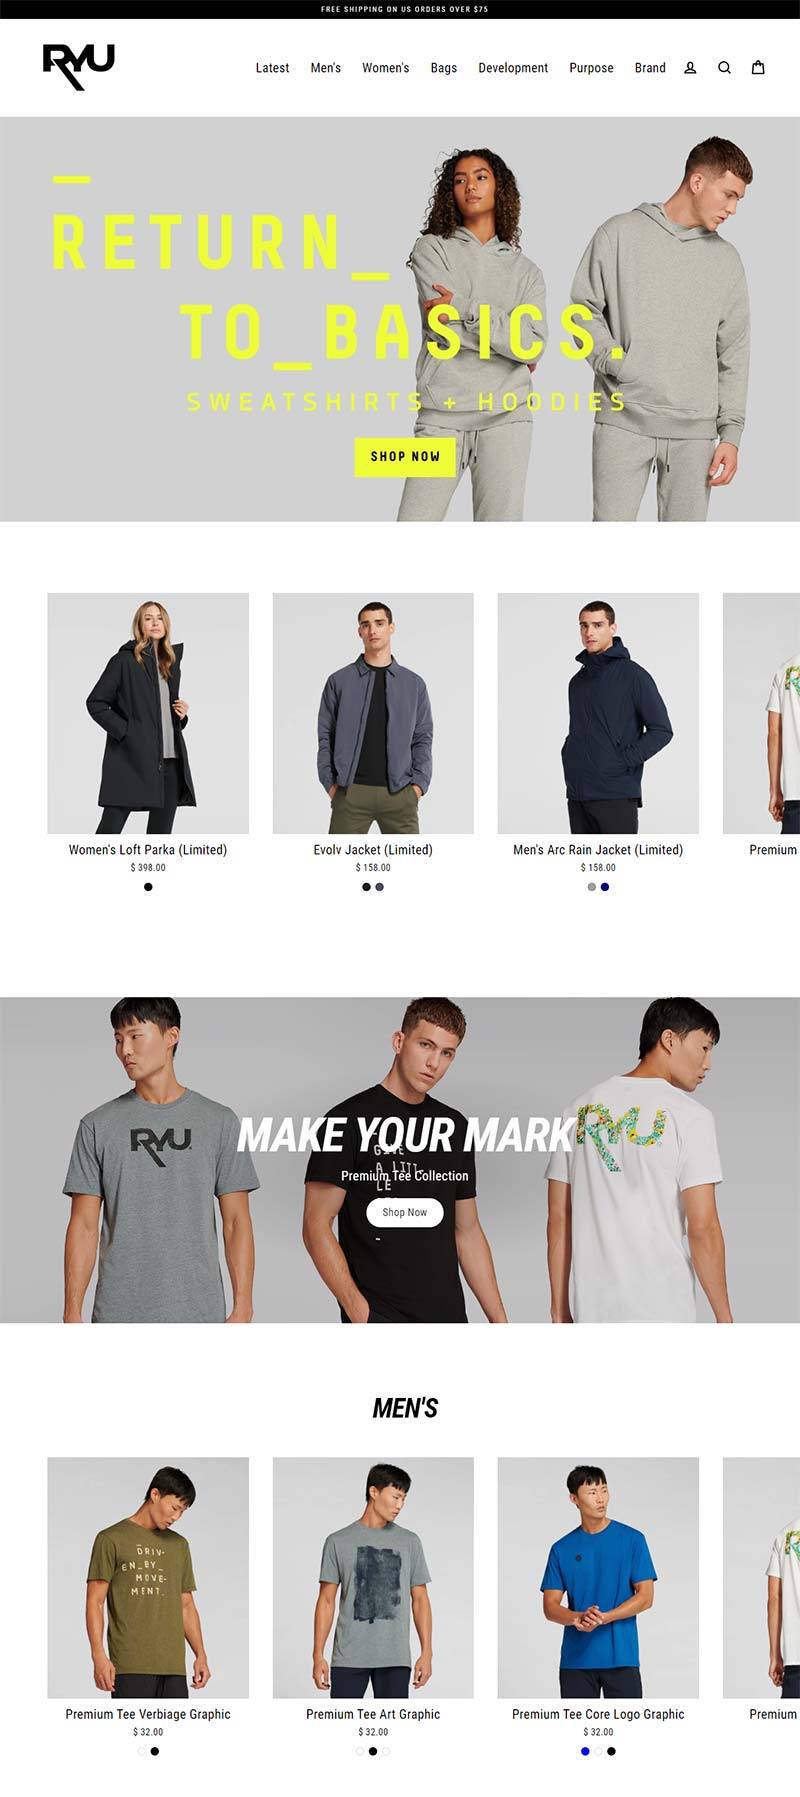 RYU 美国定制运动服饰品牌购物网站